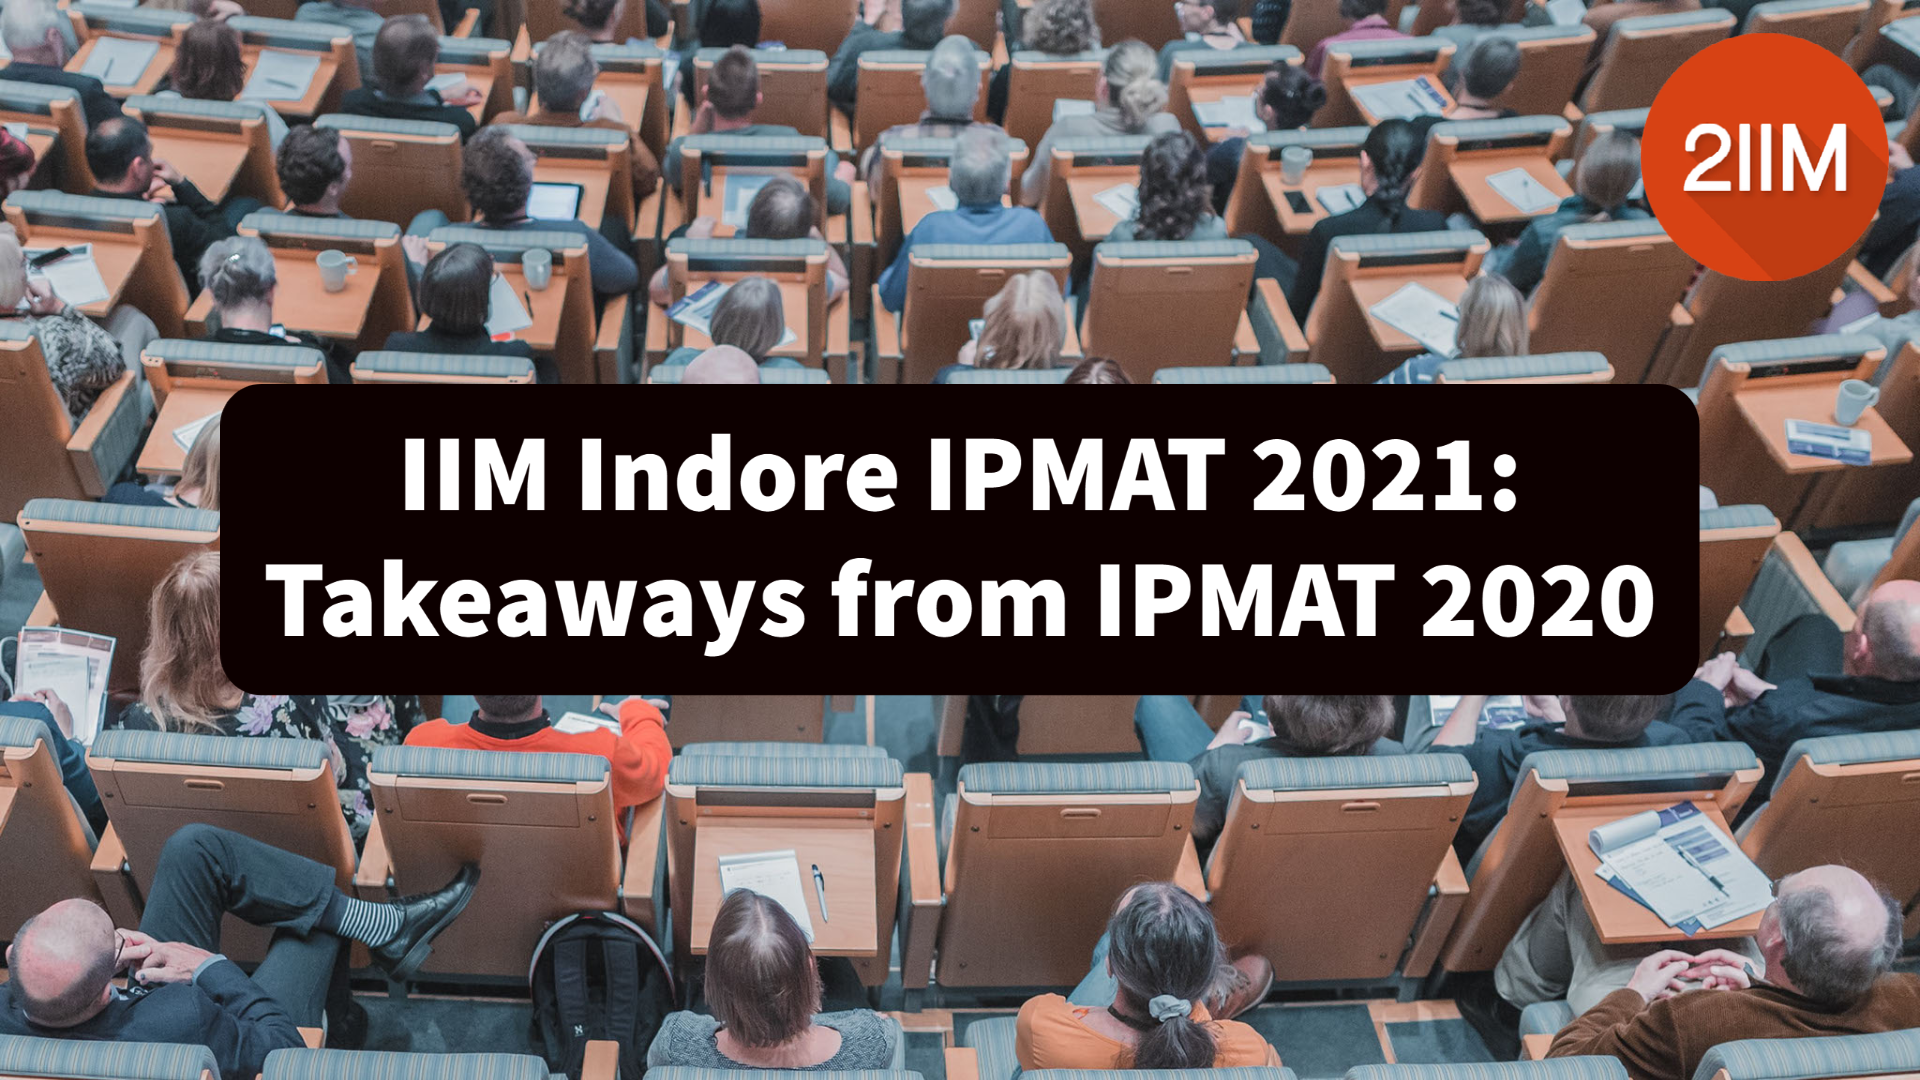 IIM Indore IPMAT 2021: Takeaways from IPMAT 2020